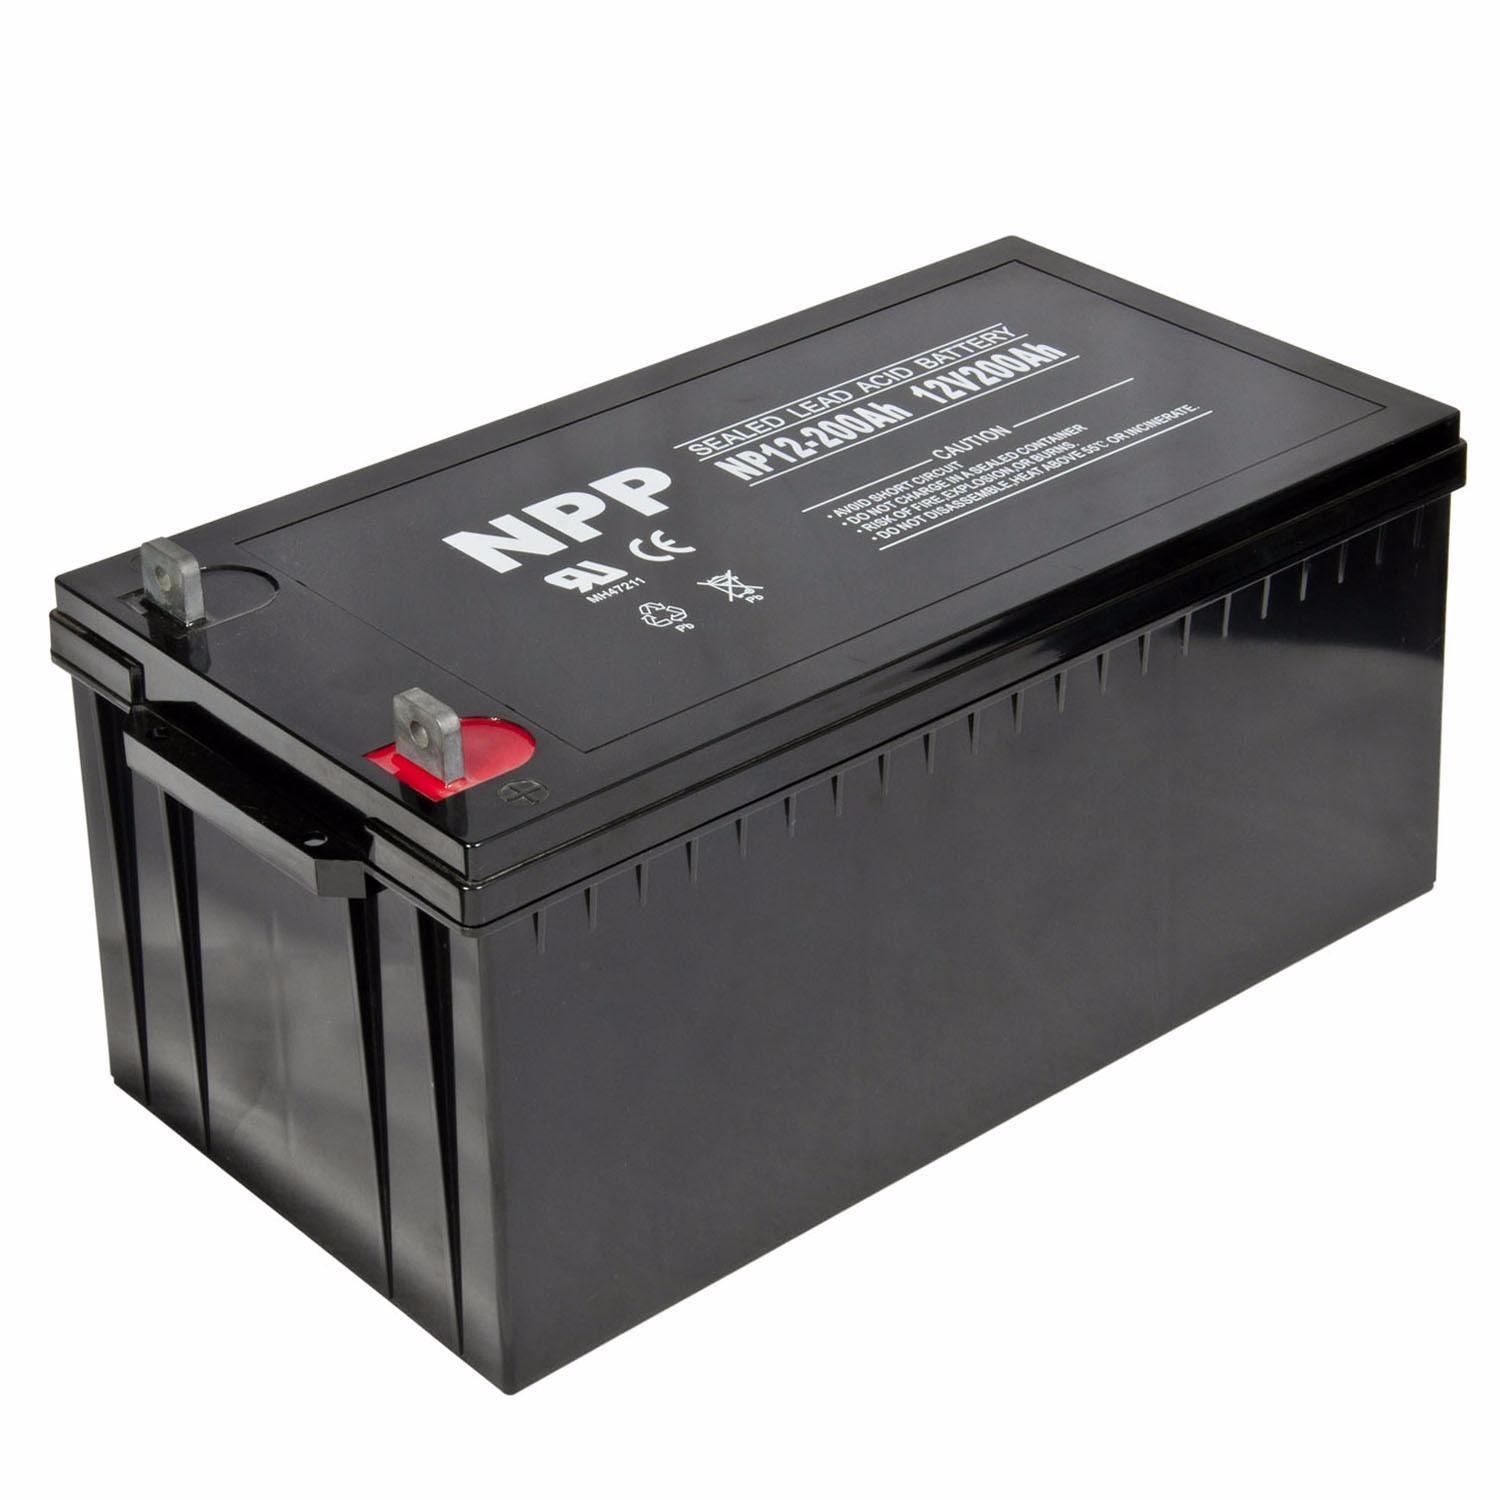 耐普蓄电池12V200AH 耐普蓄电池NP12-200 铅酸免维护蓄电池 耐普蓄电池厂家 UPS专用蓄电池